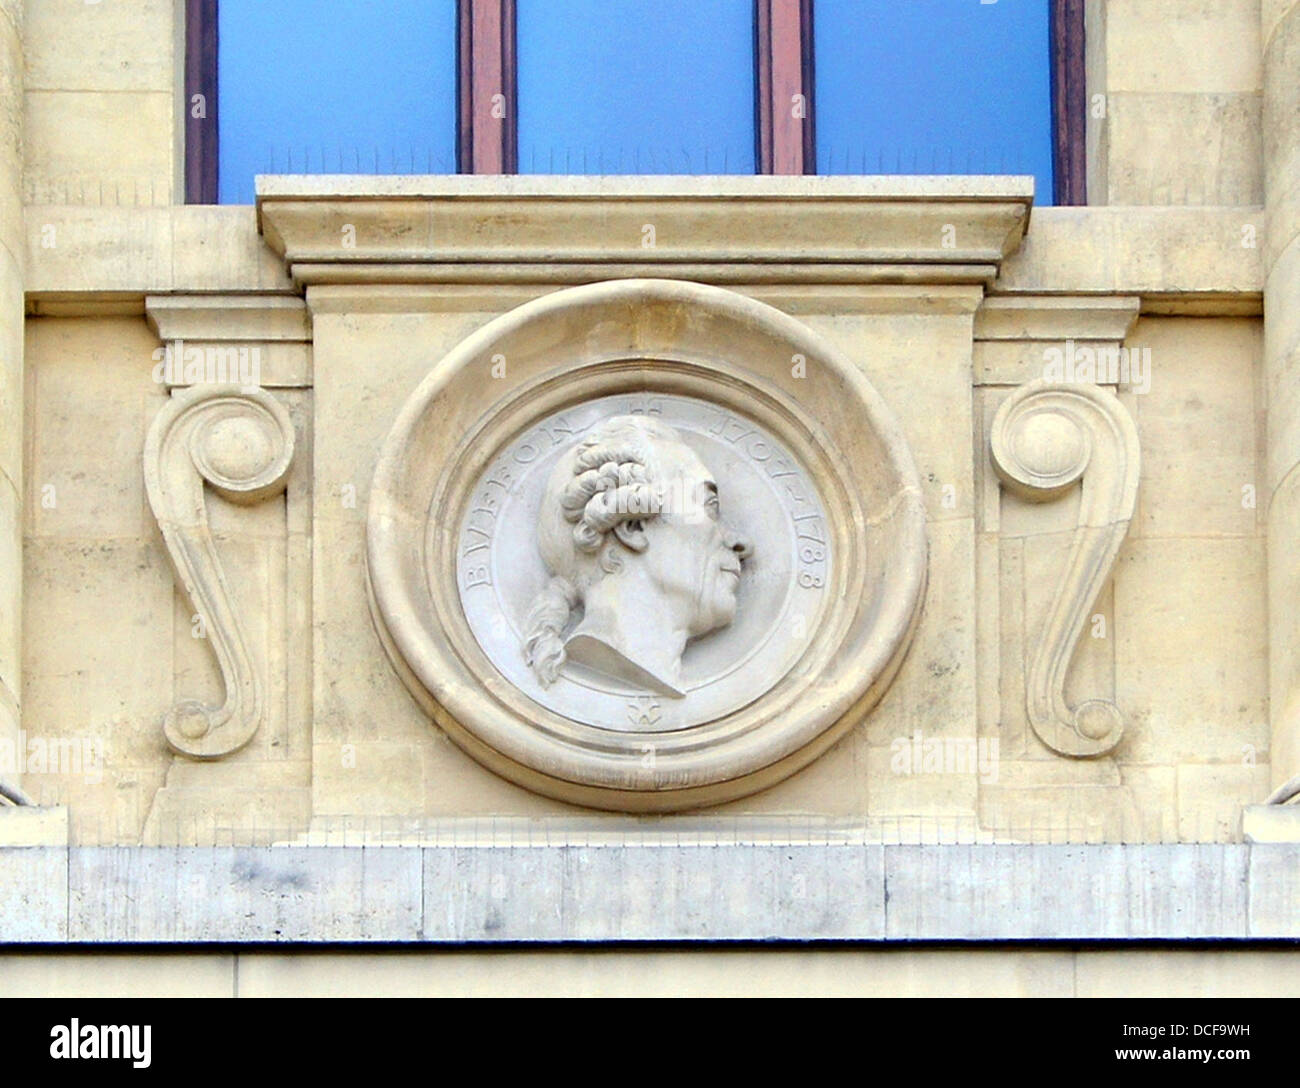 Buffon. Tercer mascaron (izquierda) en la fachada de la Grande Galerie de l'Evolution, en el Jardin des Plantes de París Foto de stock